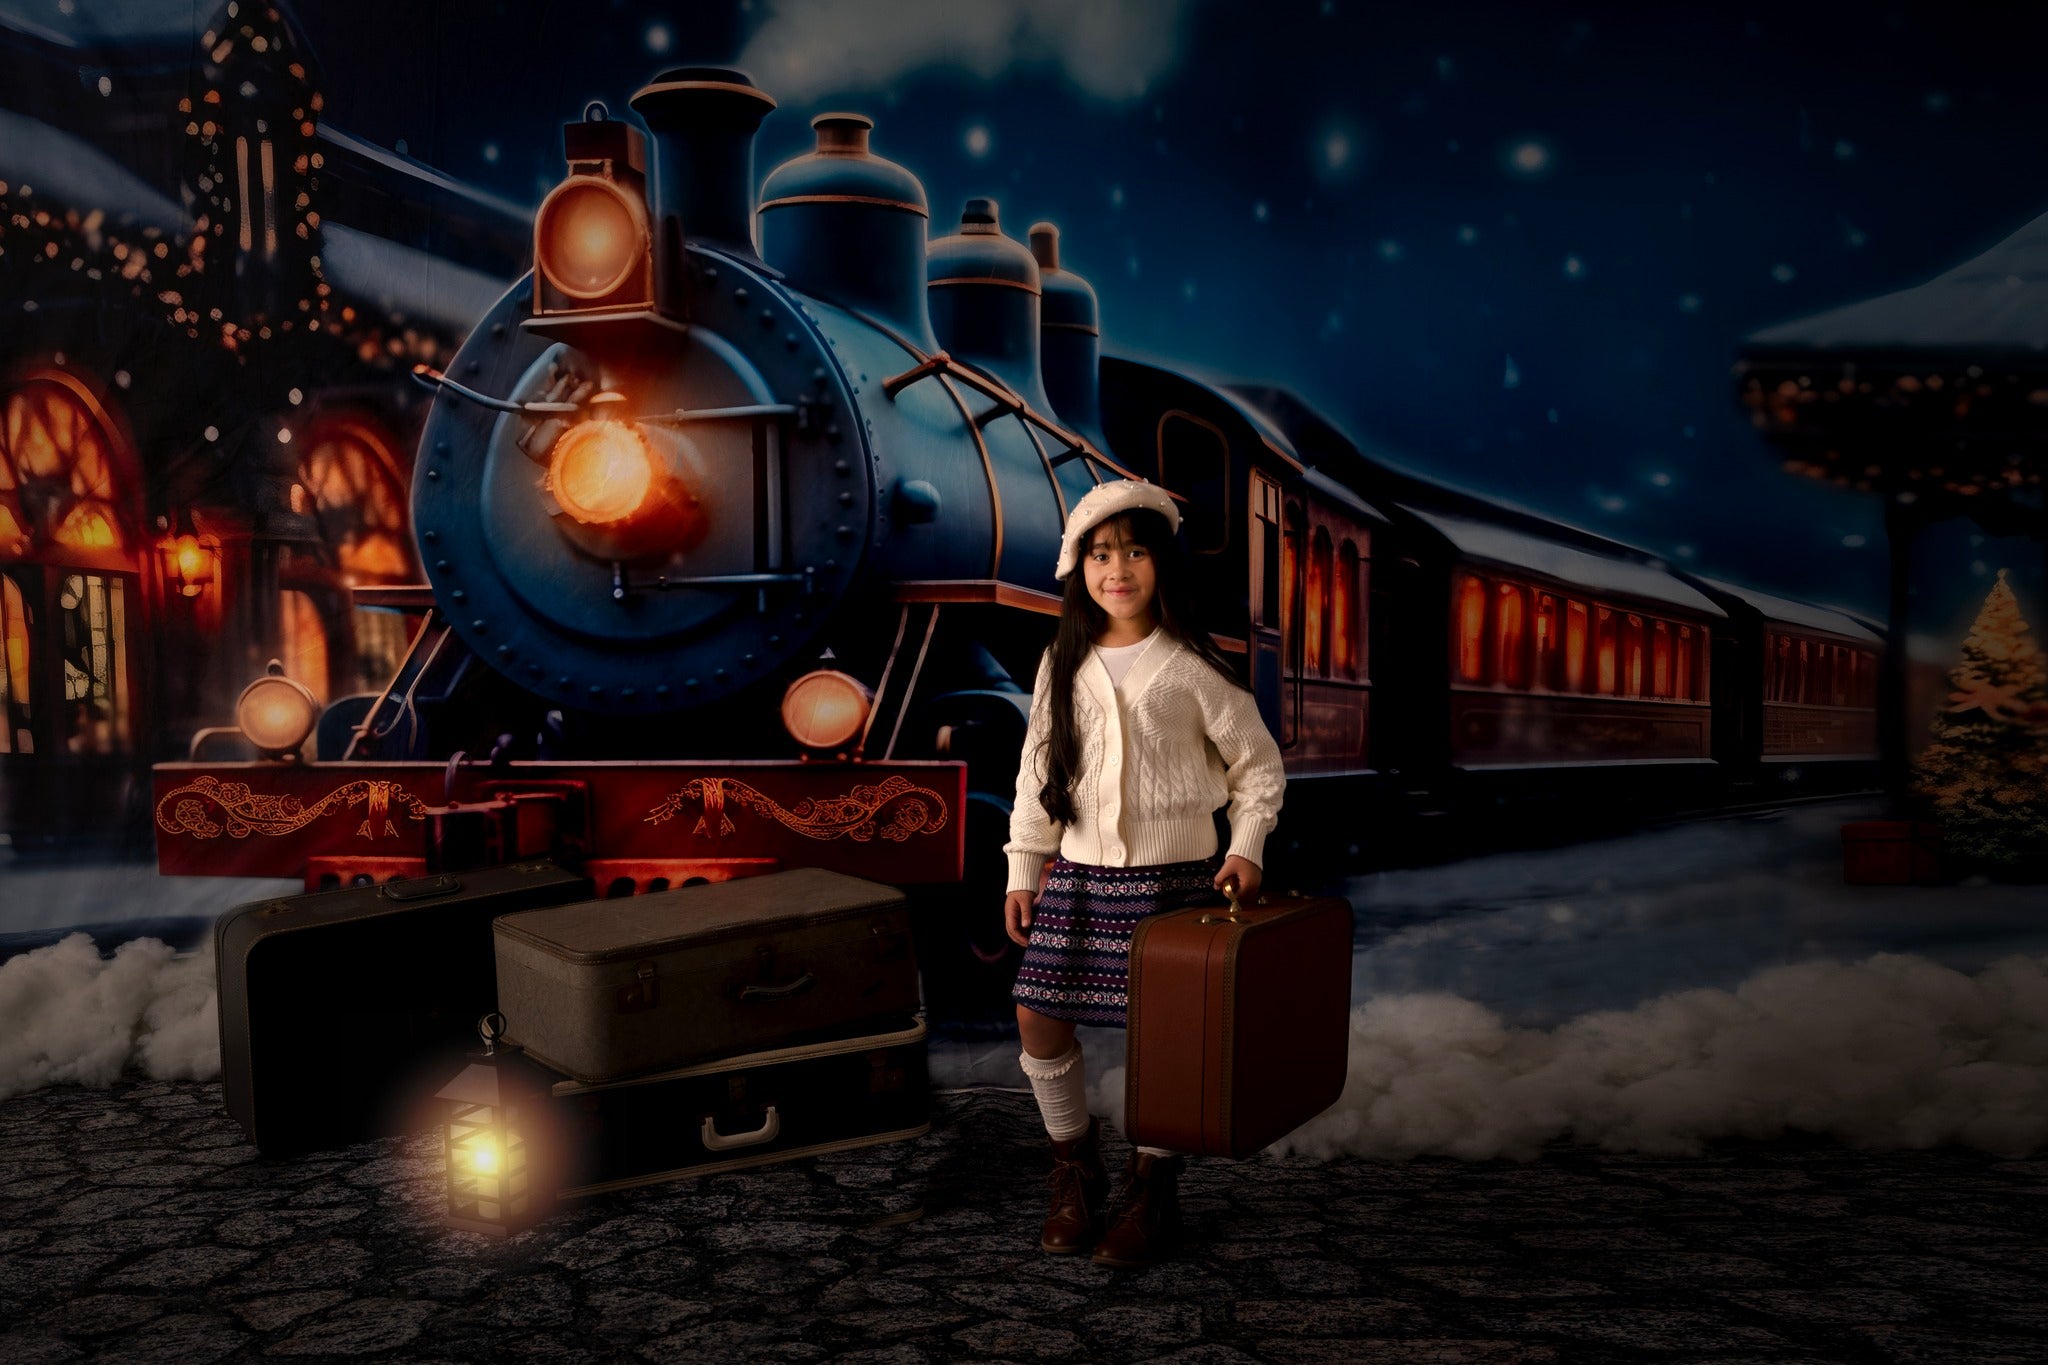 Kate Neige Nuit Train Noël Toile de fond pour la photographie